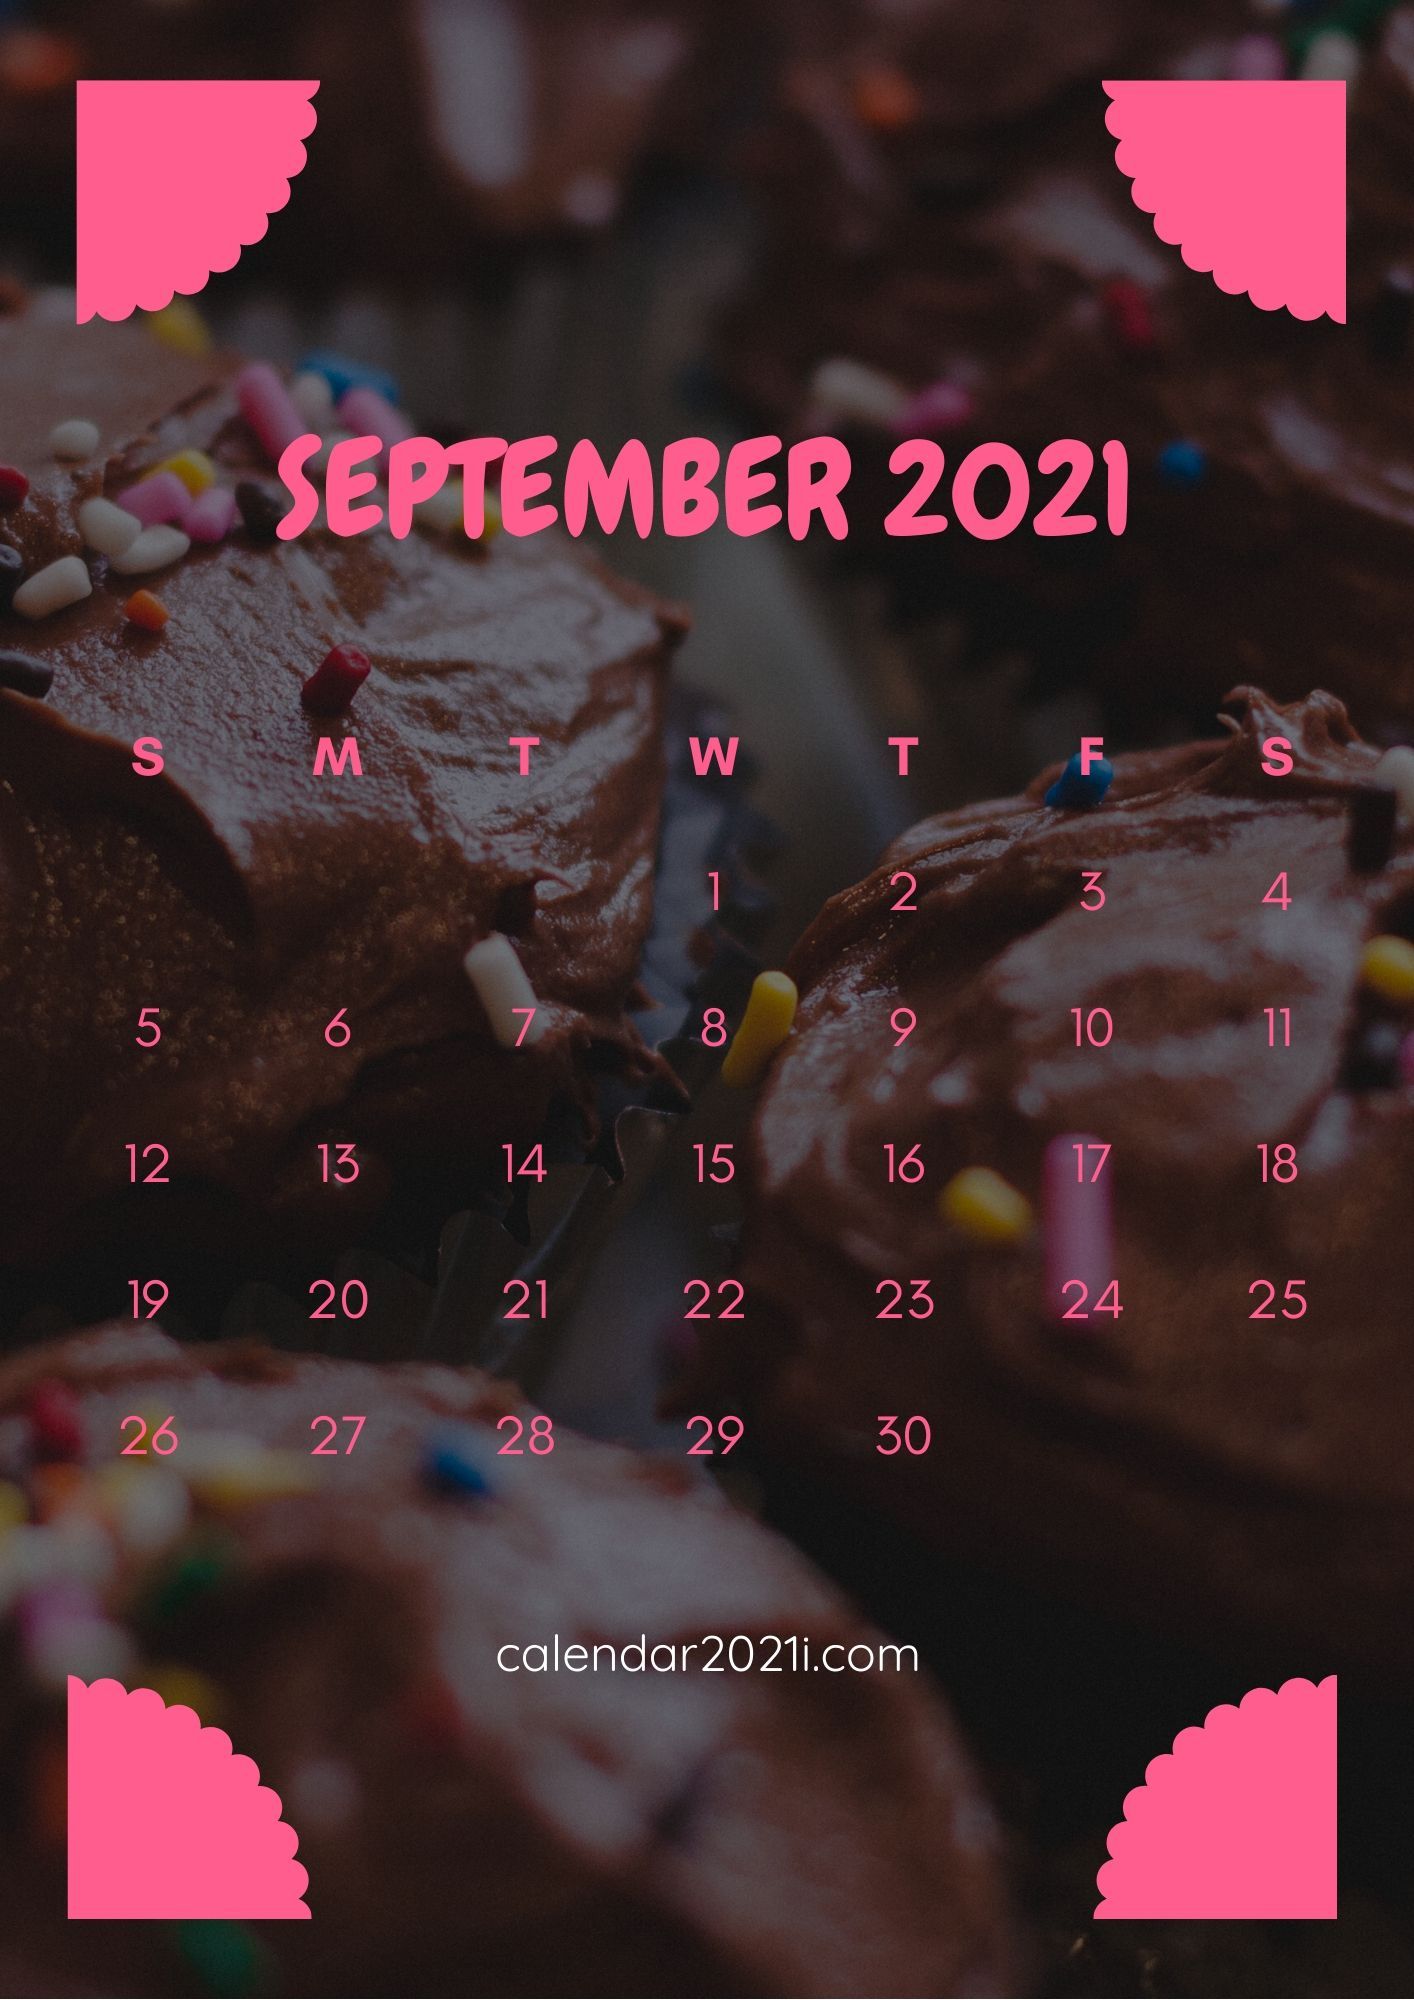 September Calendar 2021 iPhone HD Wallpaper with beautiful colors. Calendar wallpaper, 2021 calendar, September calendar